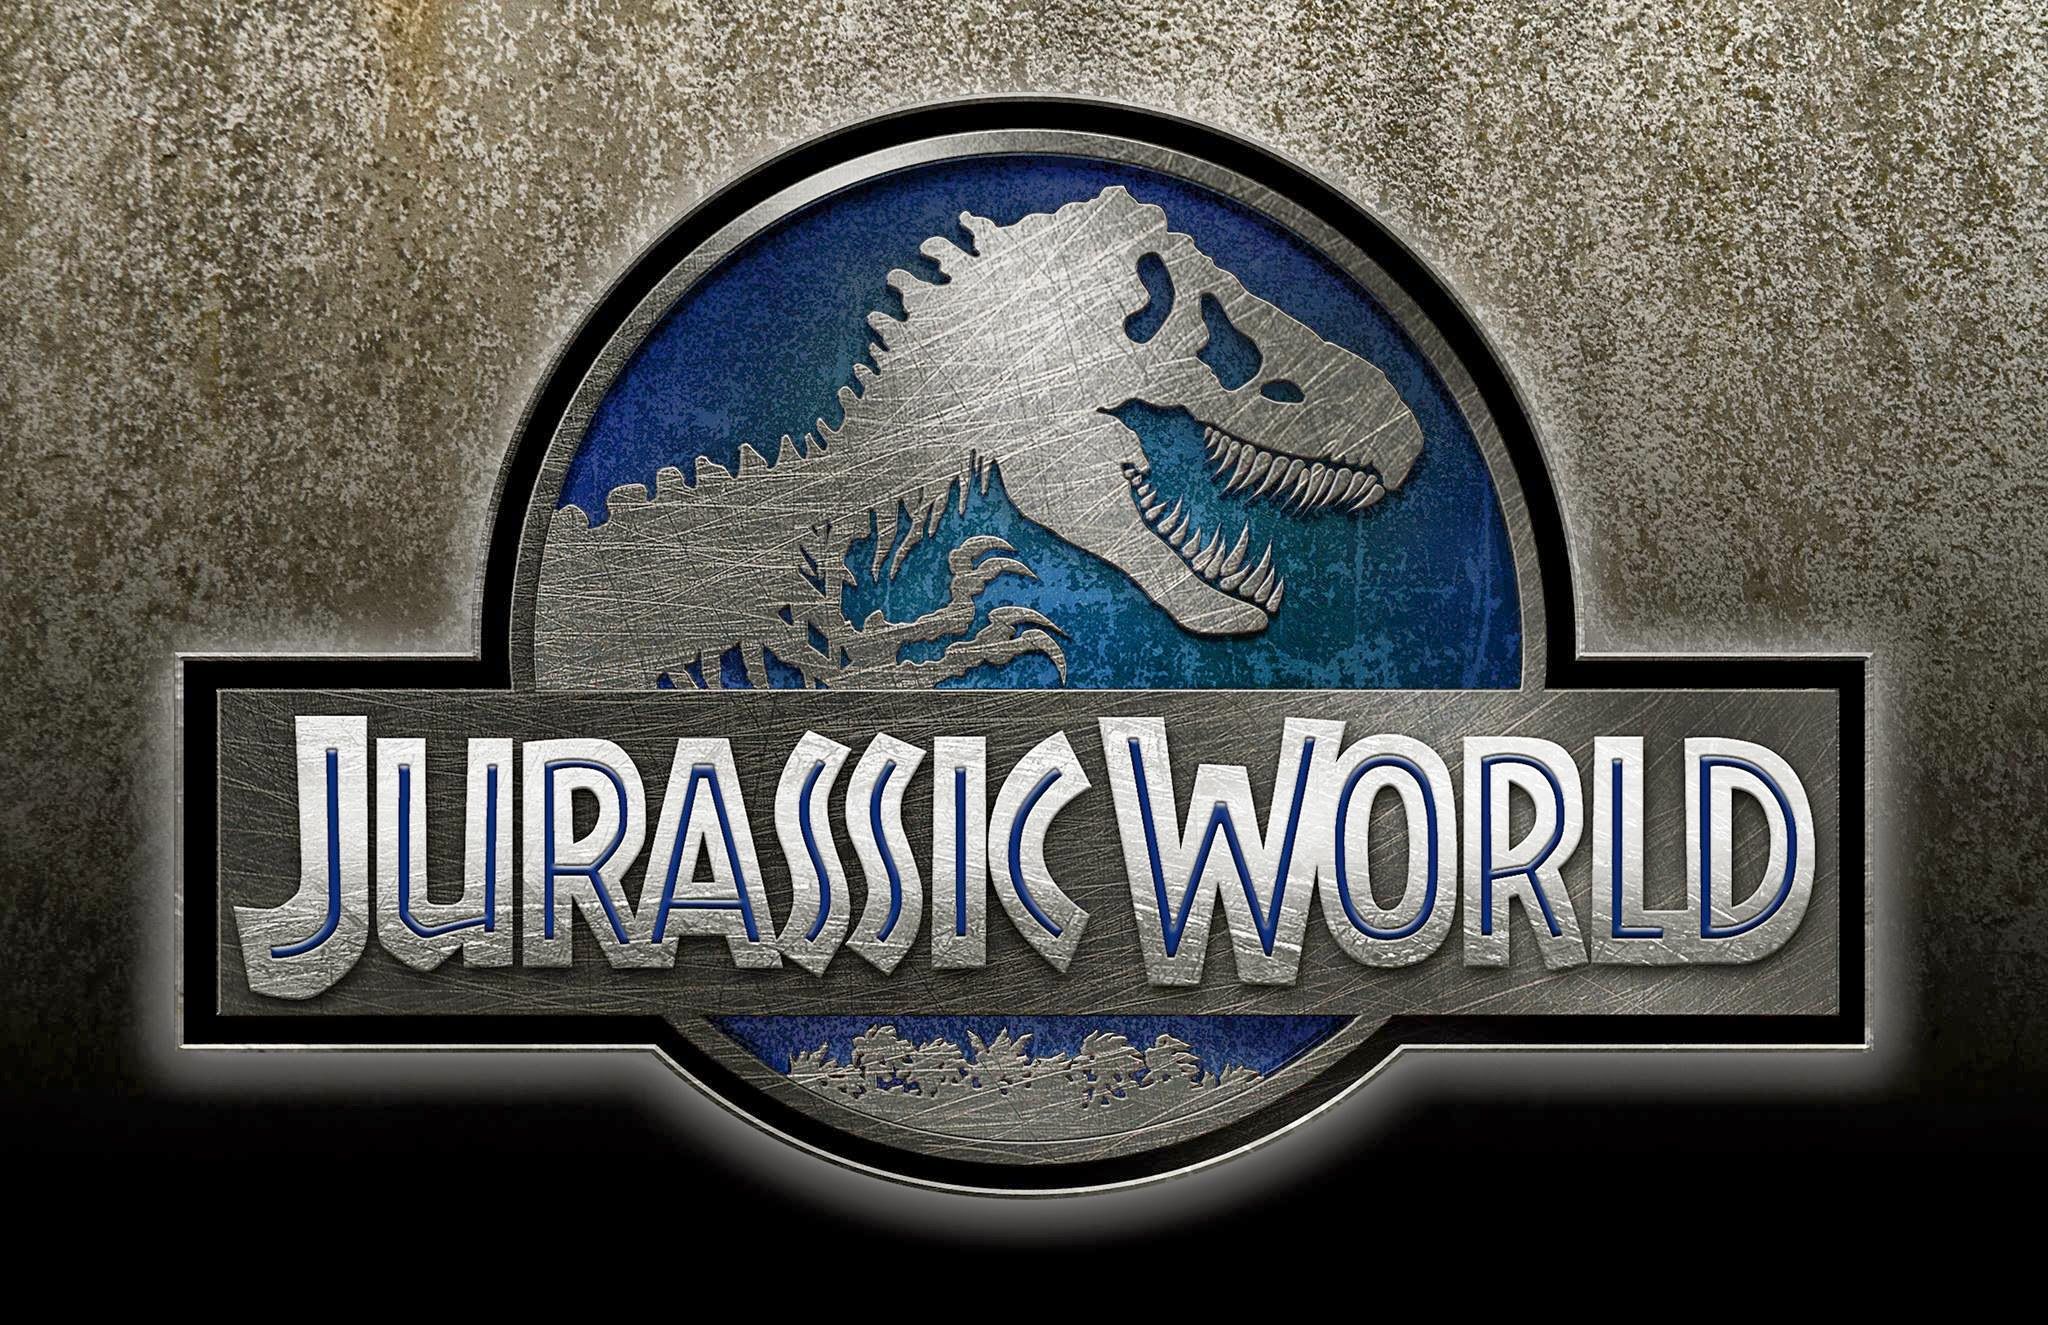 Jurassic world Logos